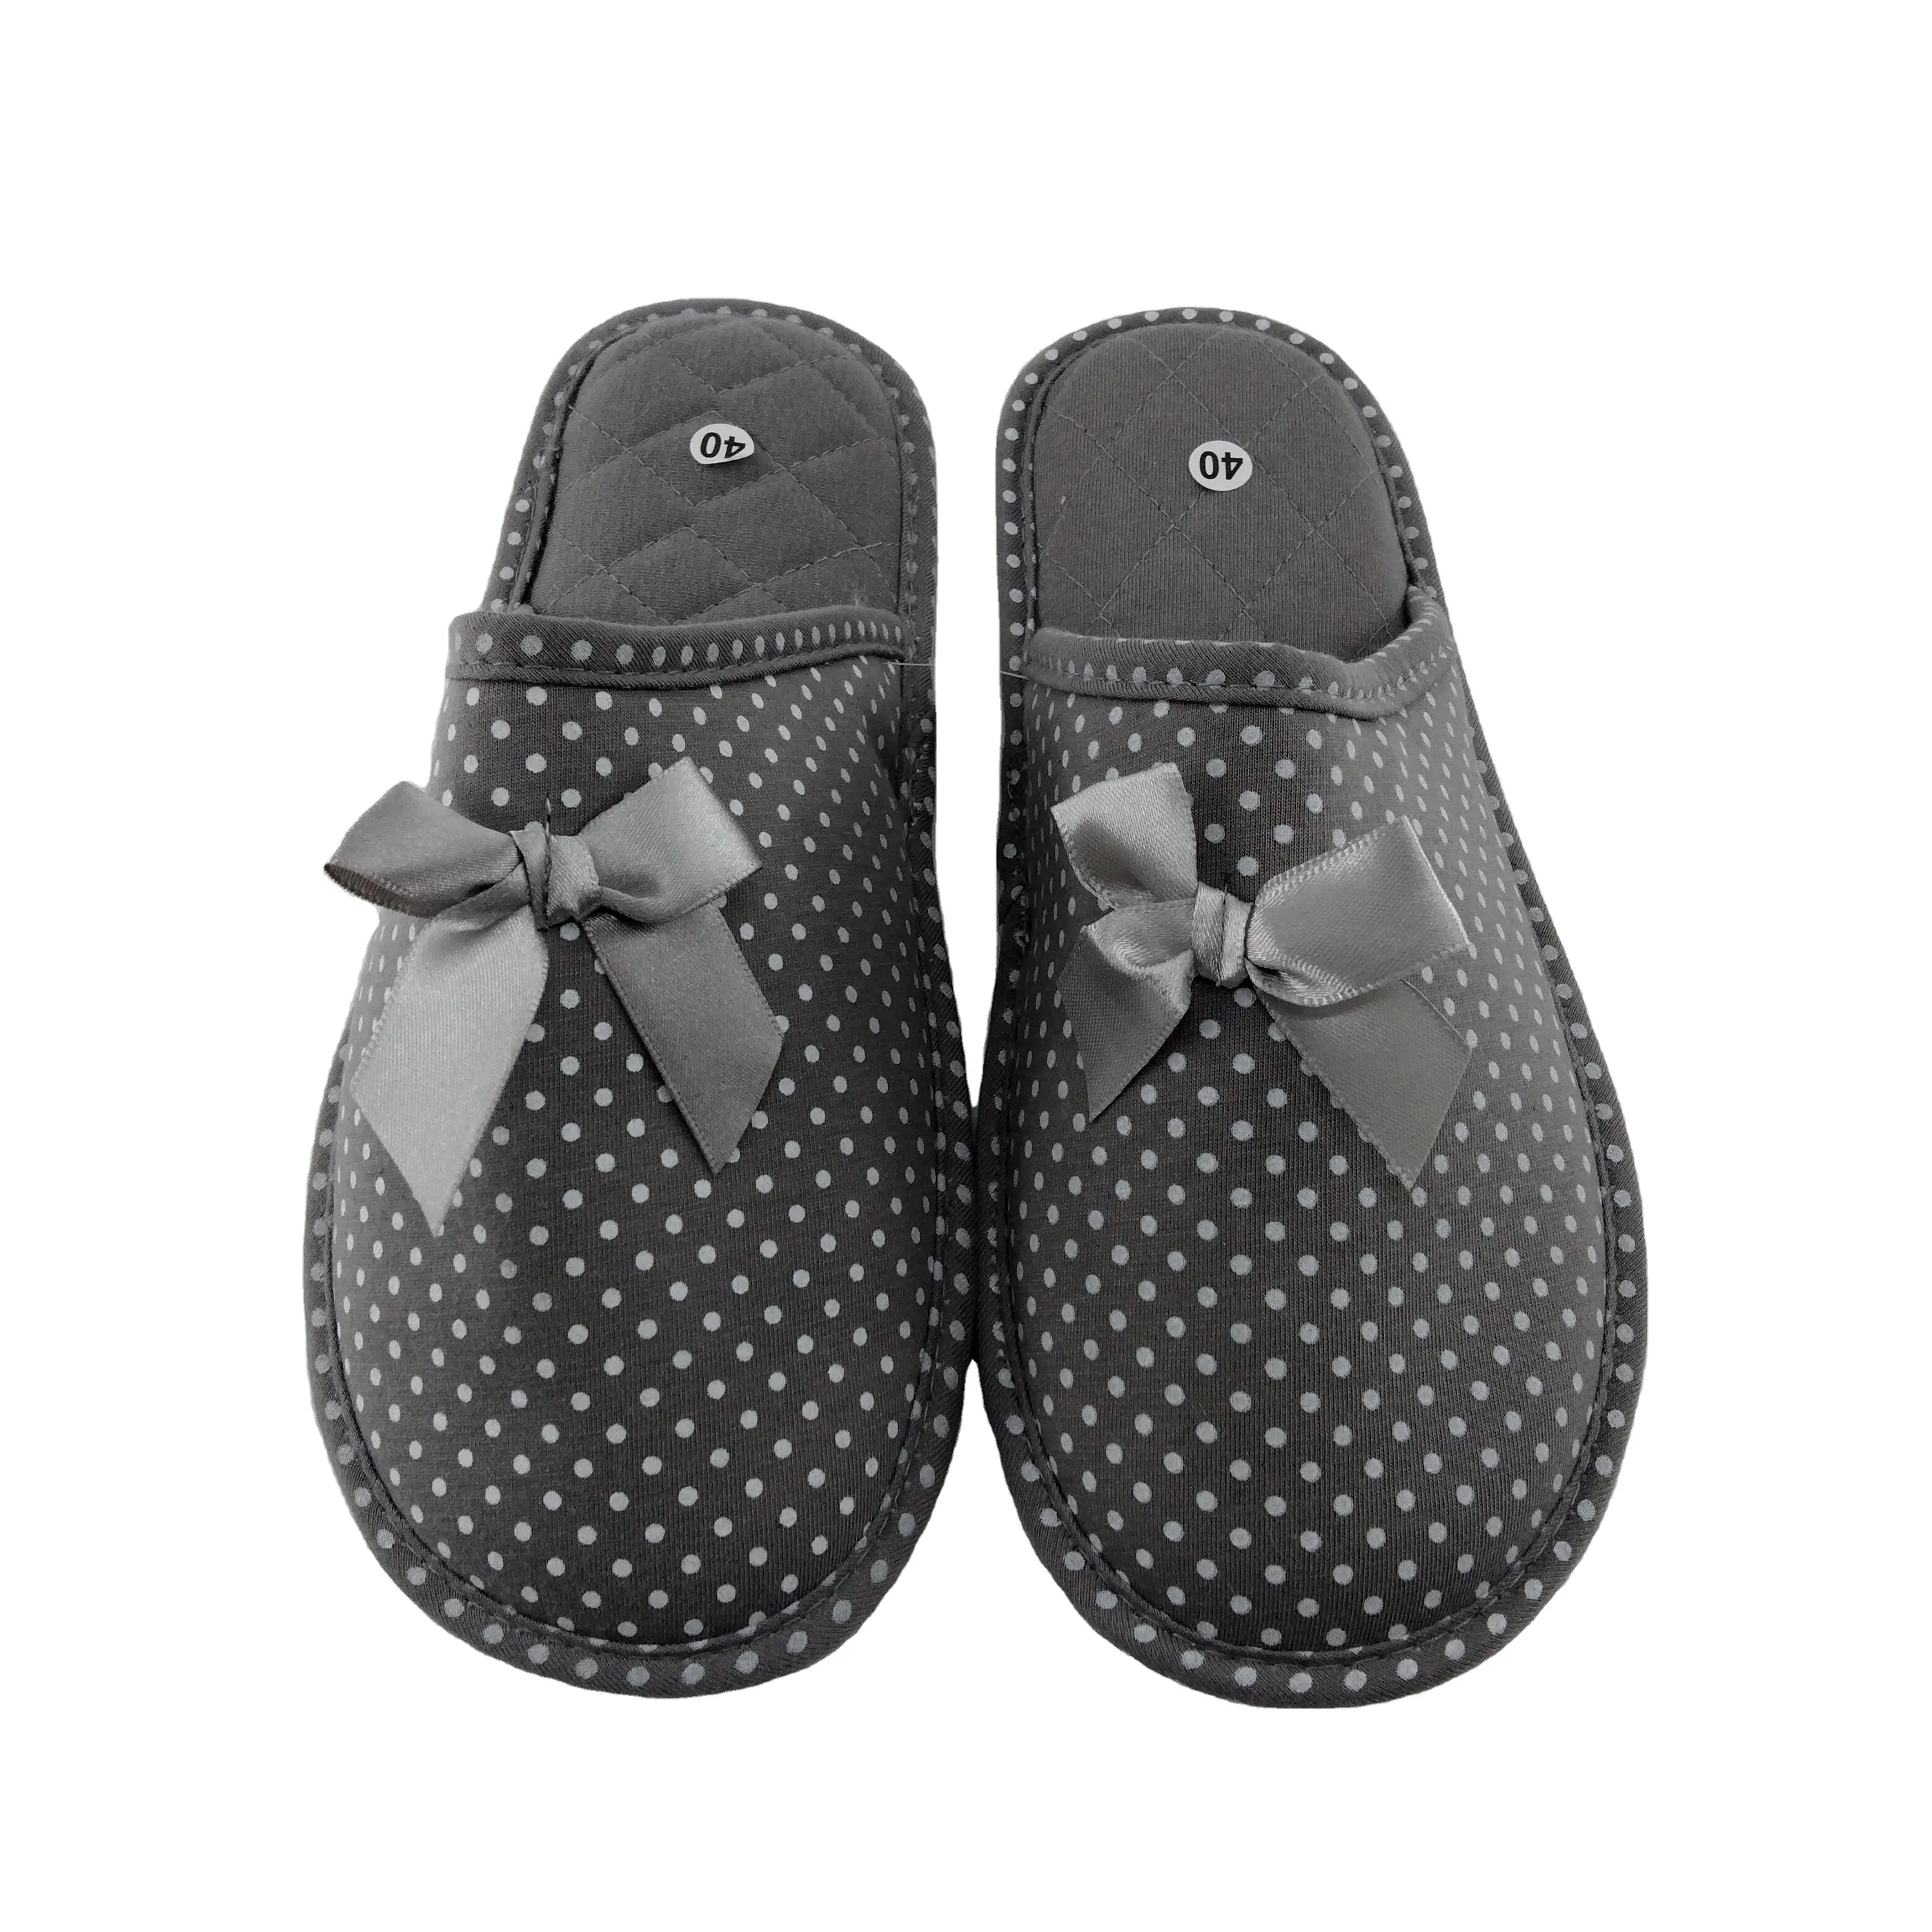 Wholesale Indoor Soft Cotton Jersey Sleeper With Bowknot Bedroom Indoor Slippers Women Footwear For Women